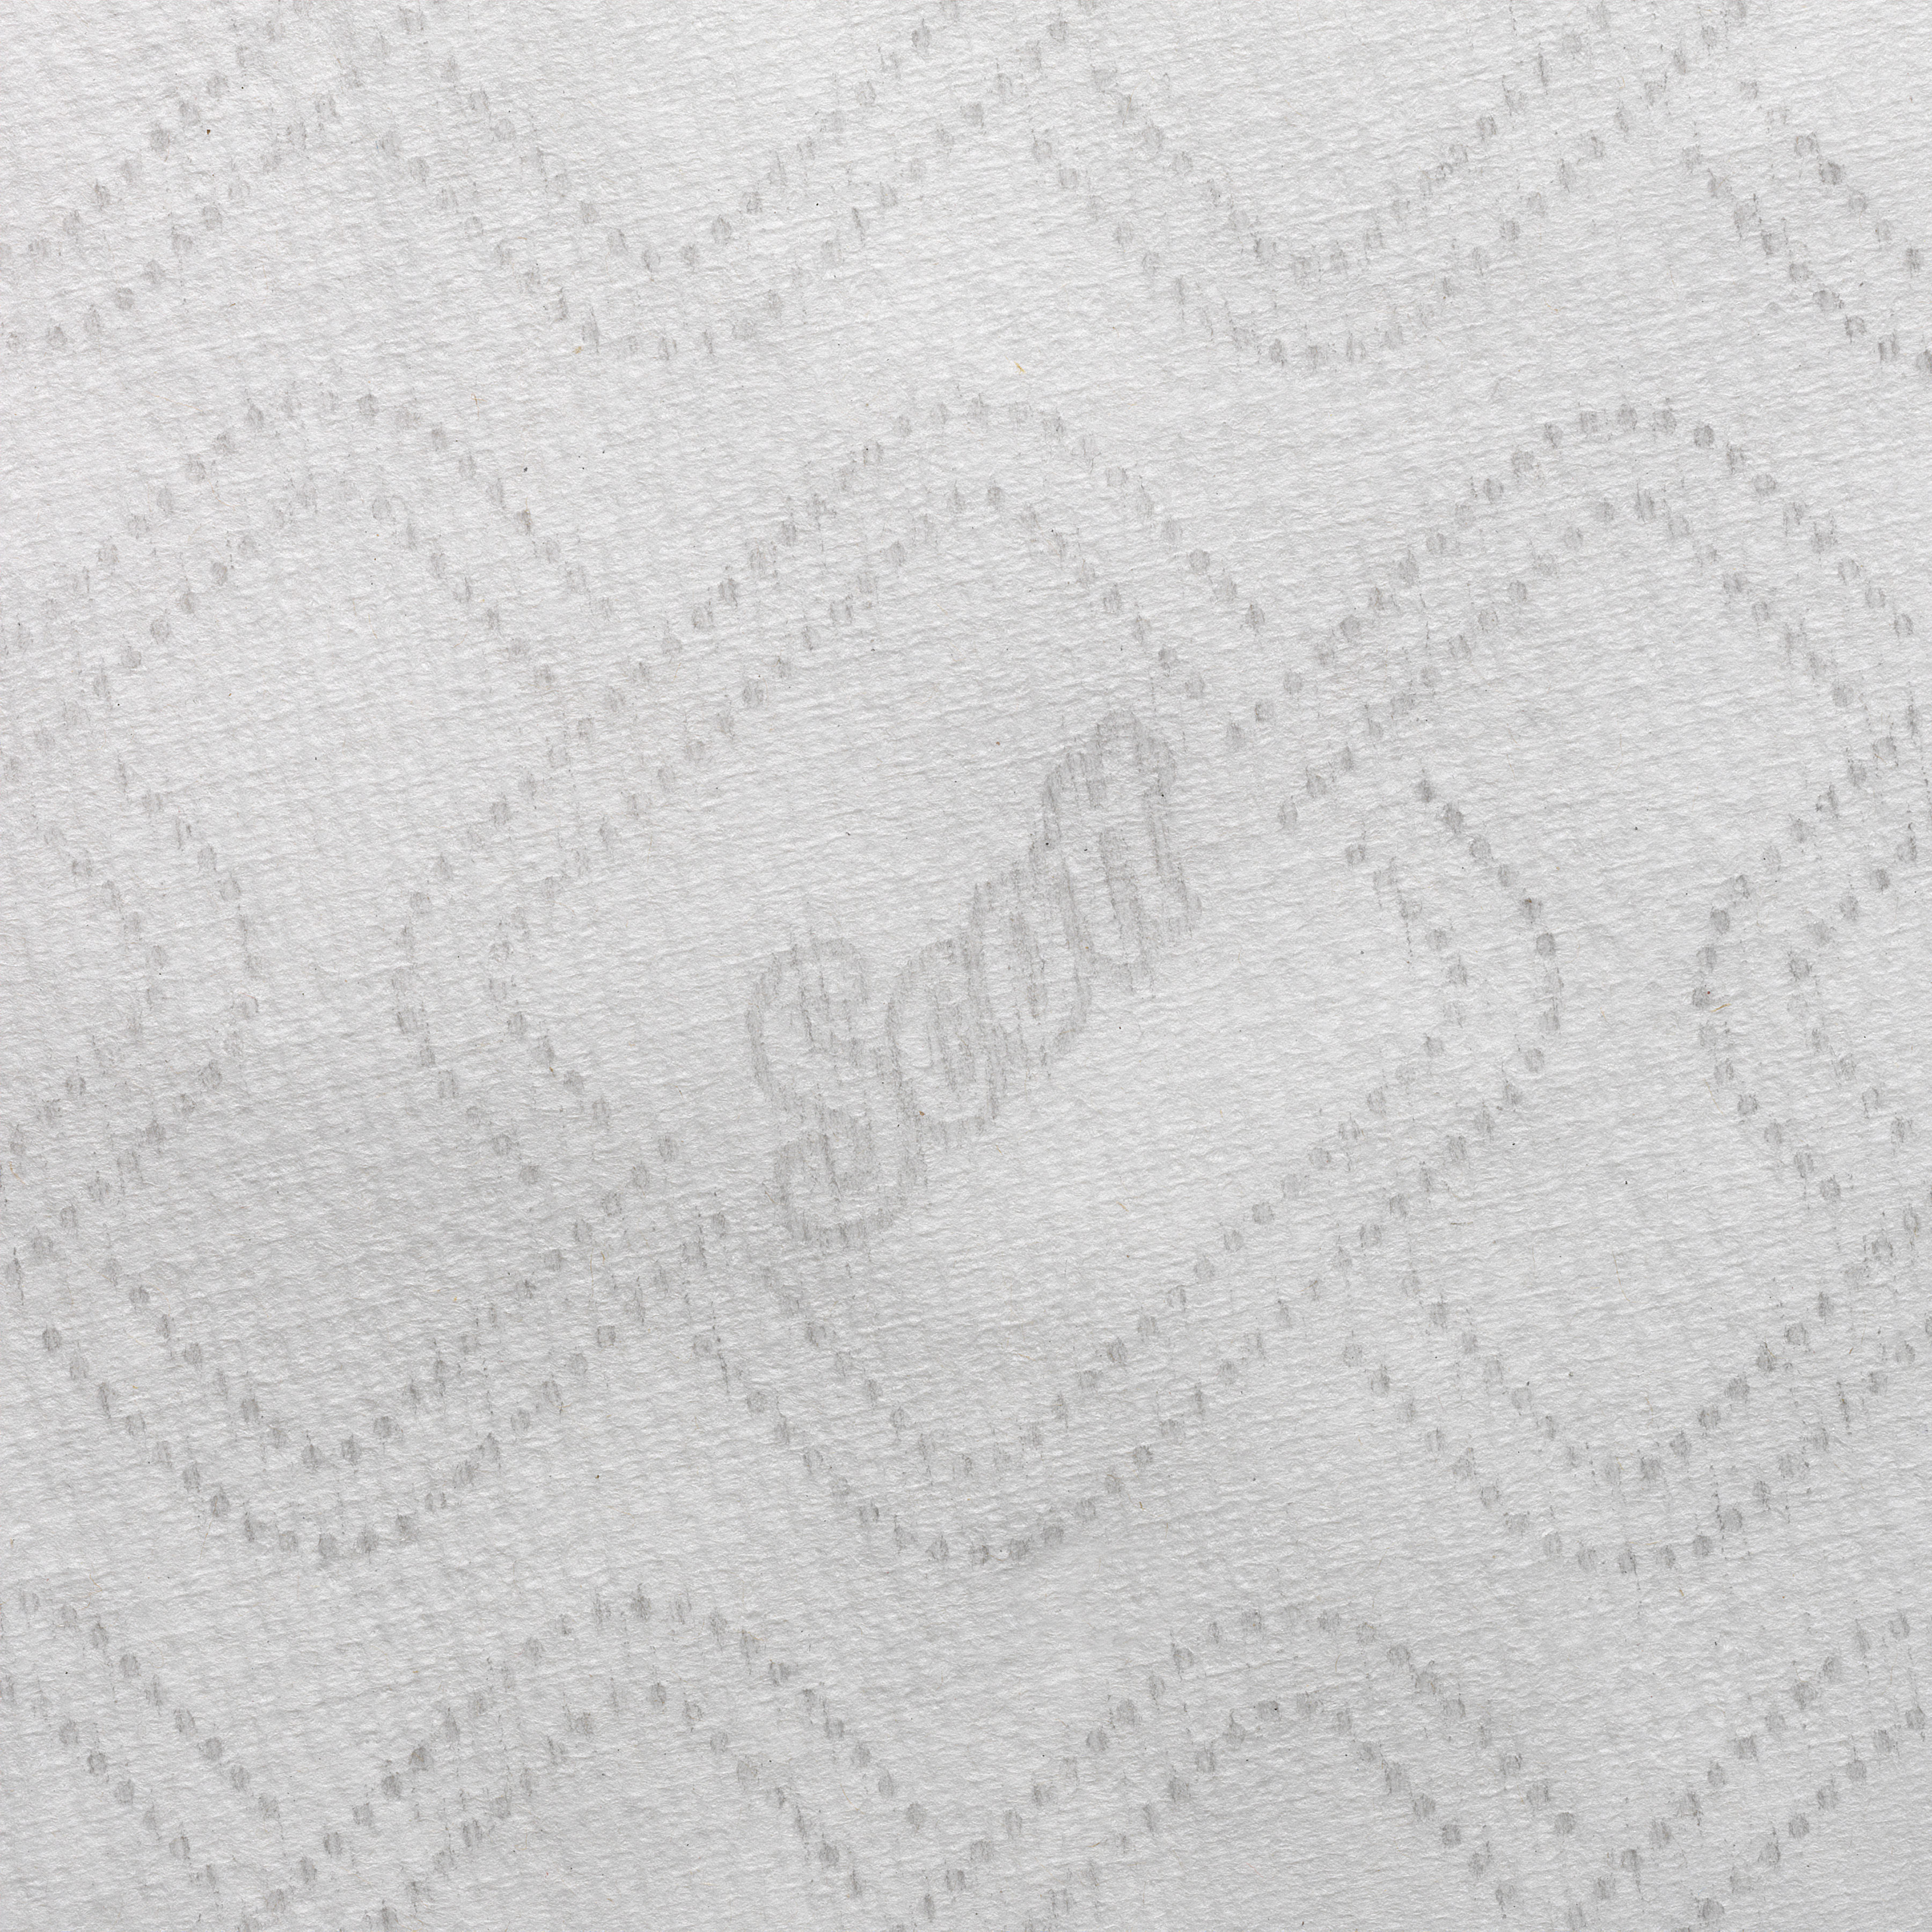 Papírové ručníky Scott Essential bílé | 6 x 350 m